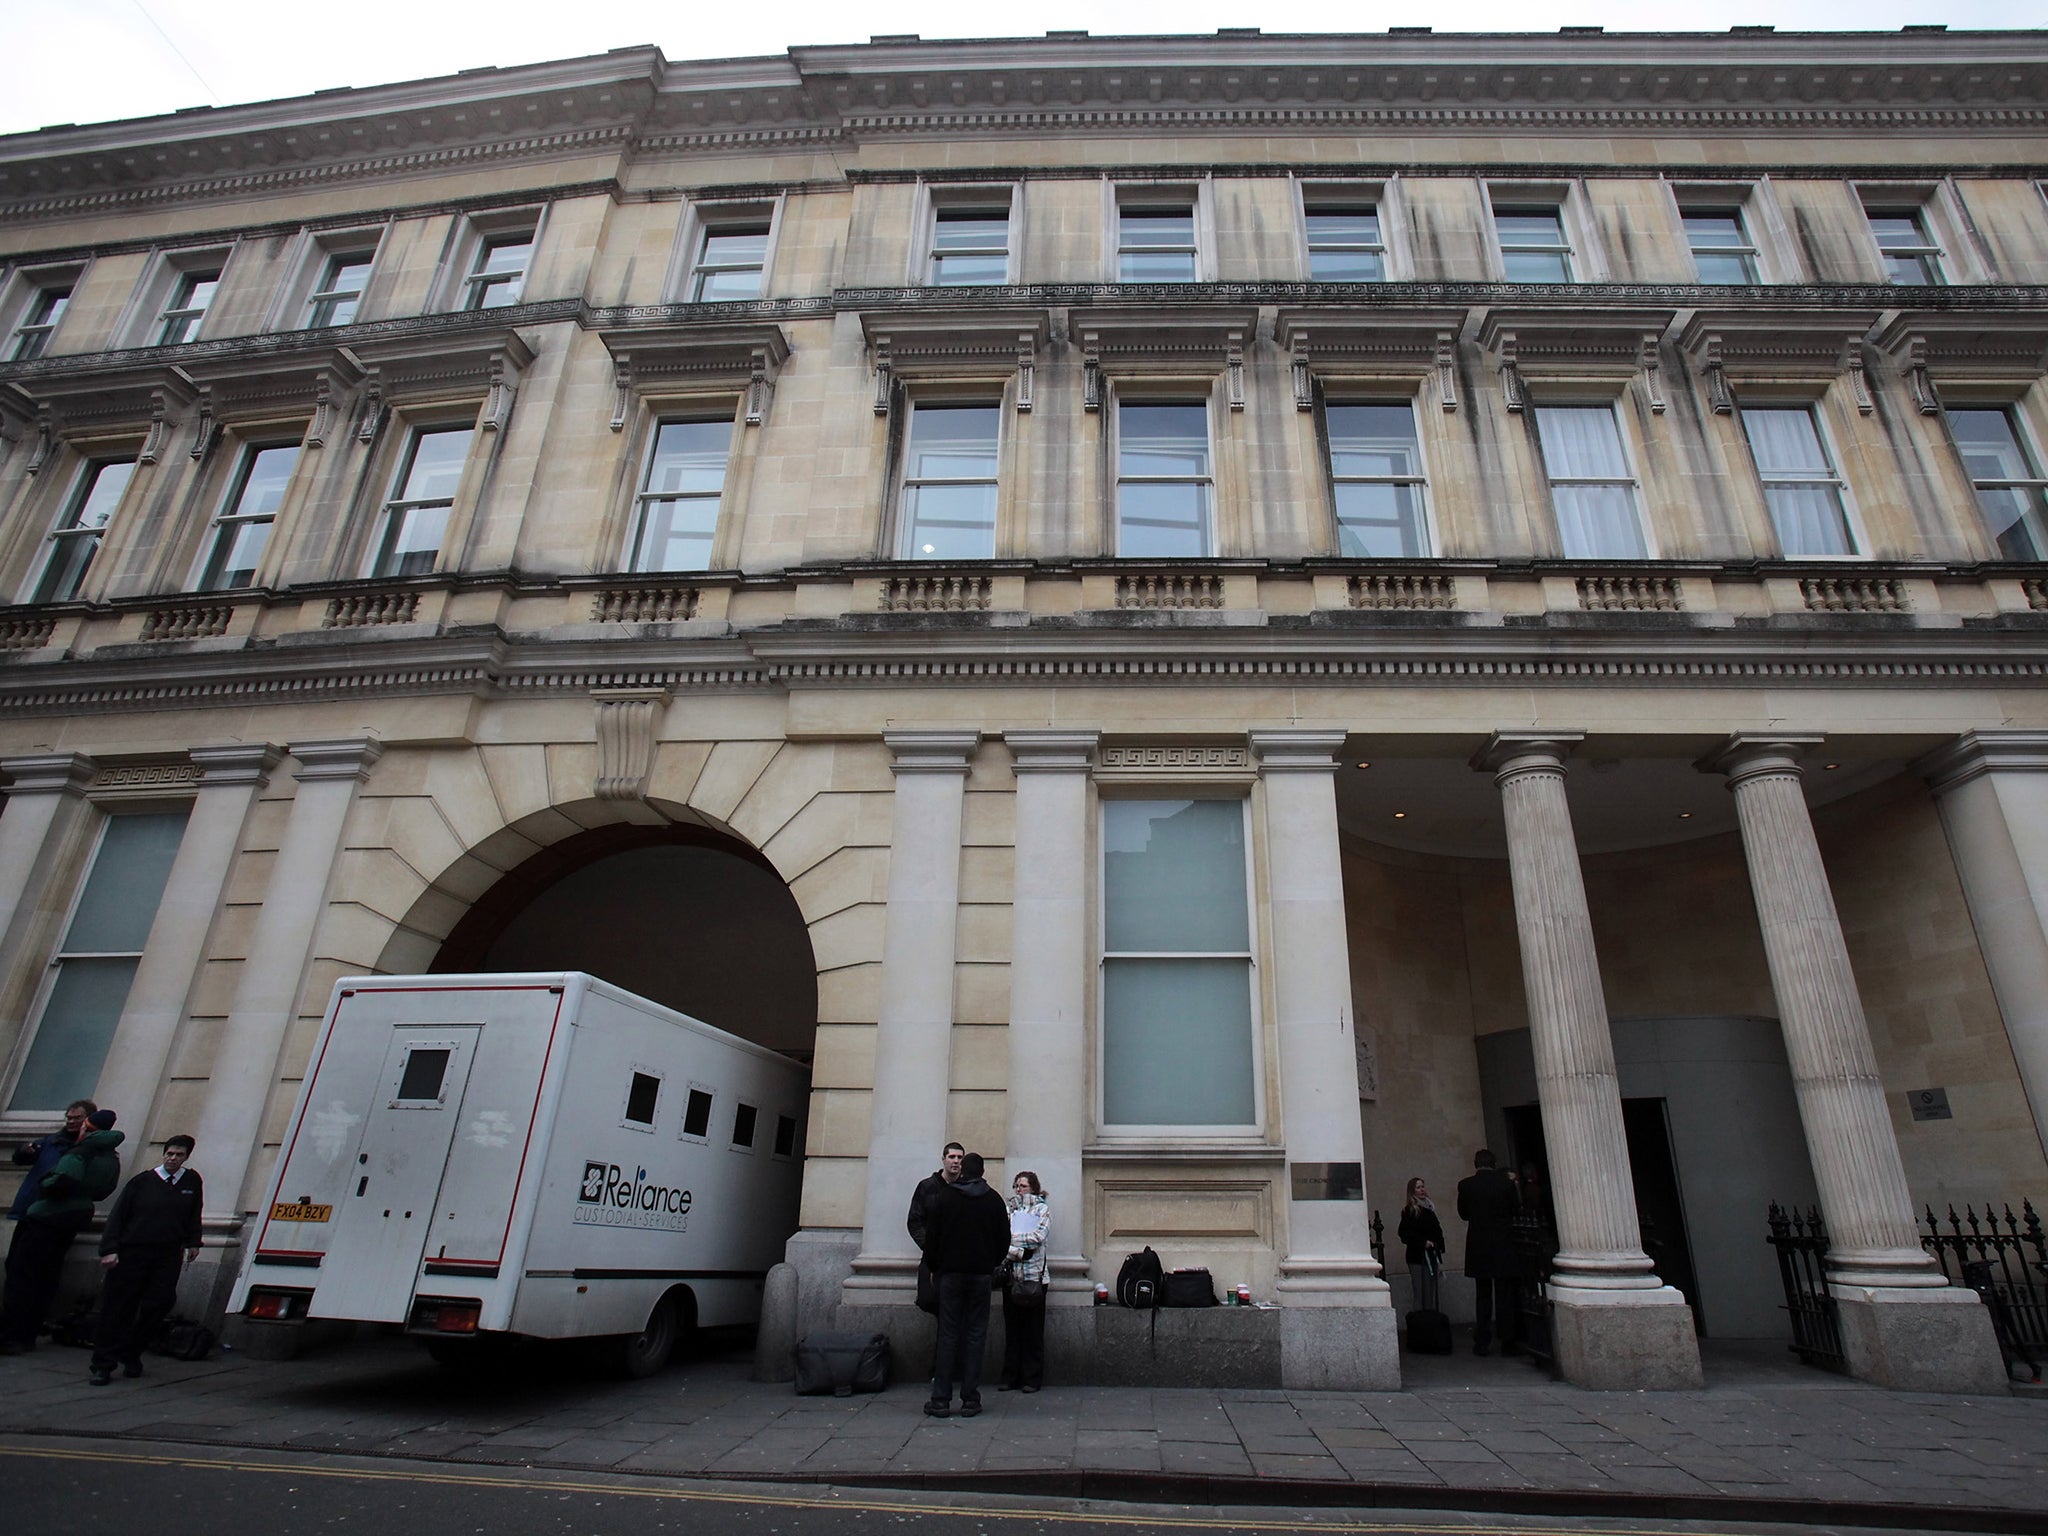 The case was heard at Bristol Crown Court